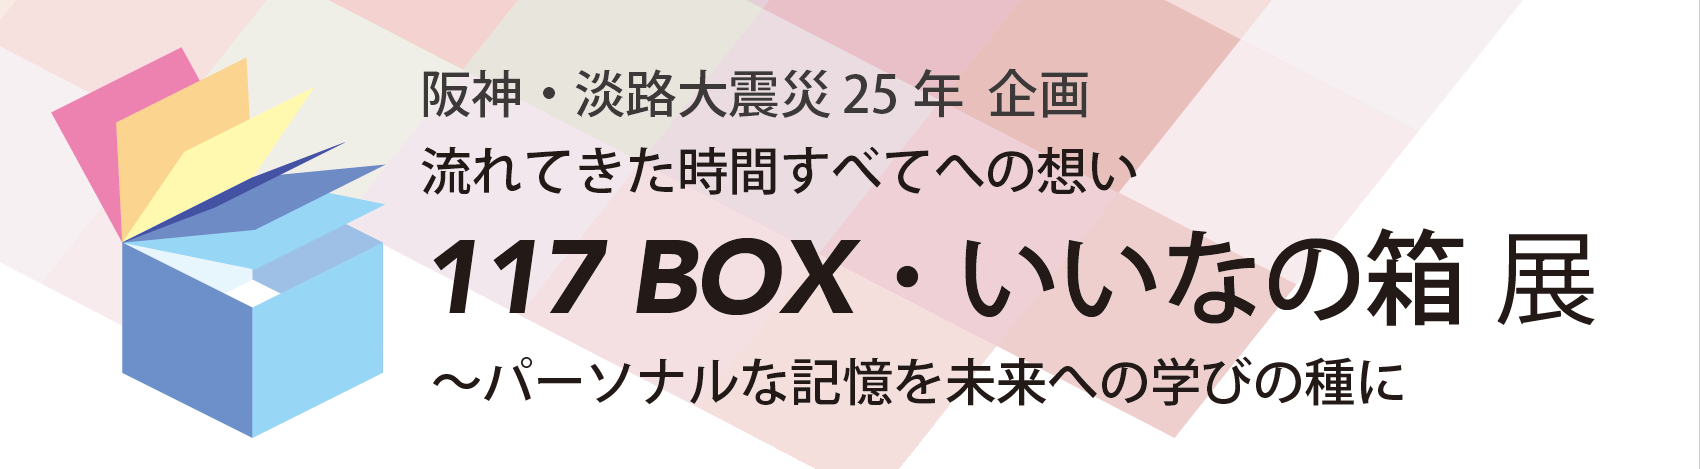 阪神・淡路大震災25年企画 117 BOX ・いいなの箱展 タイトルイメージ